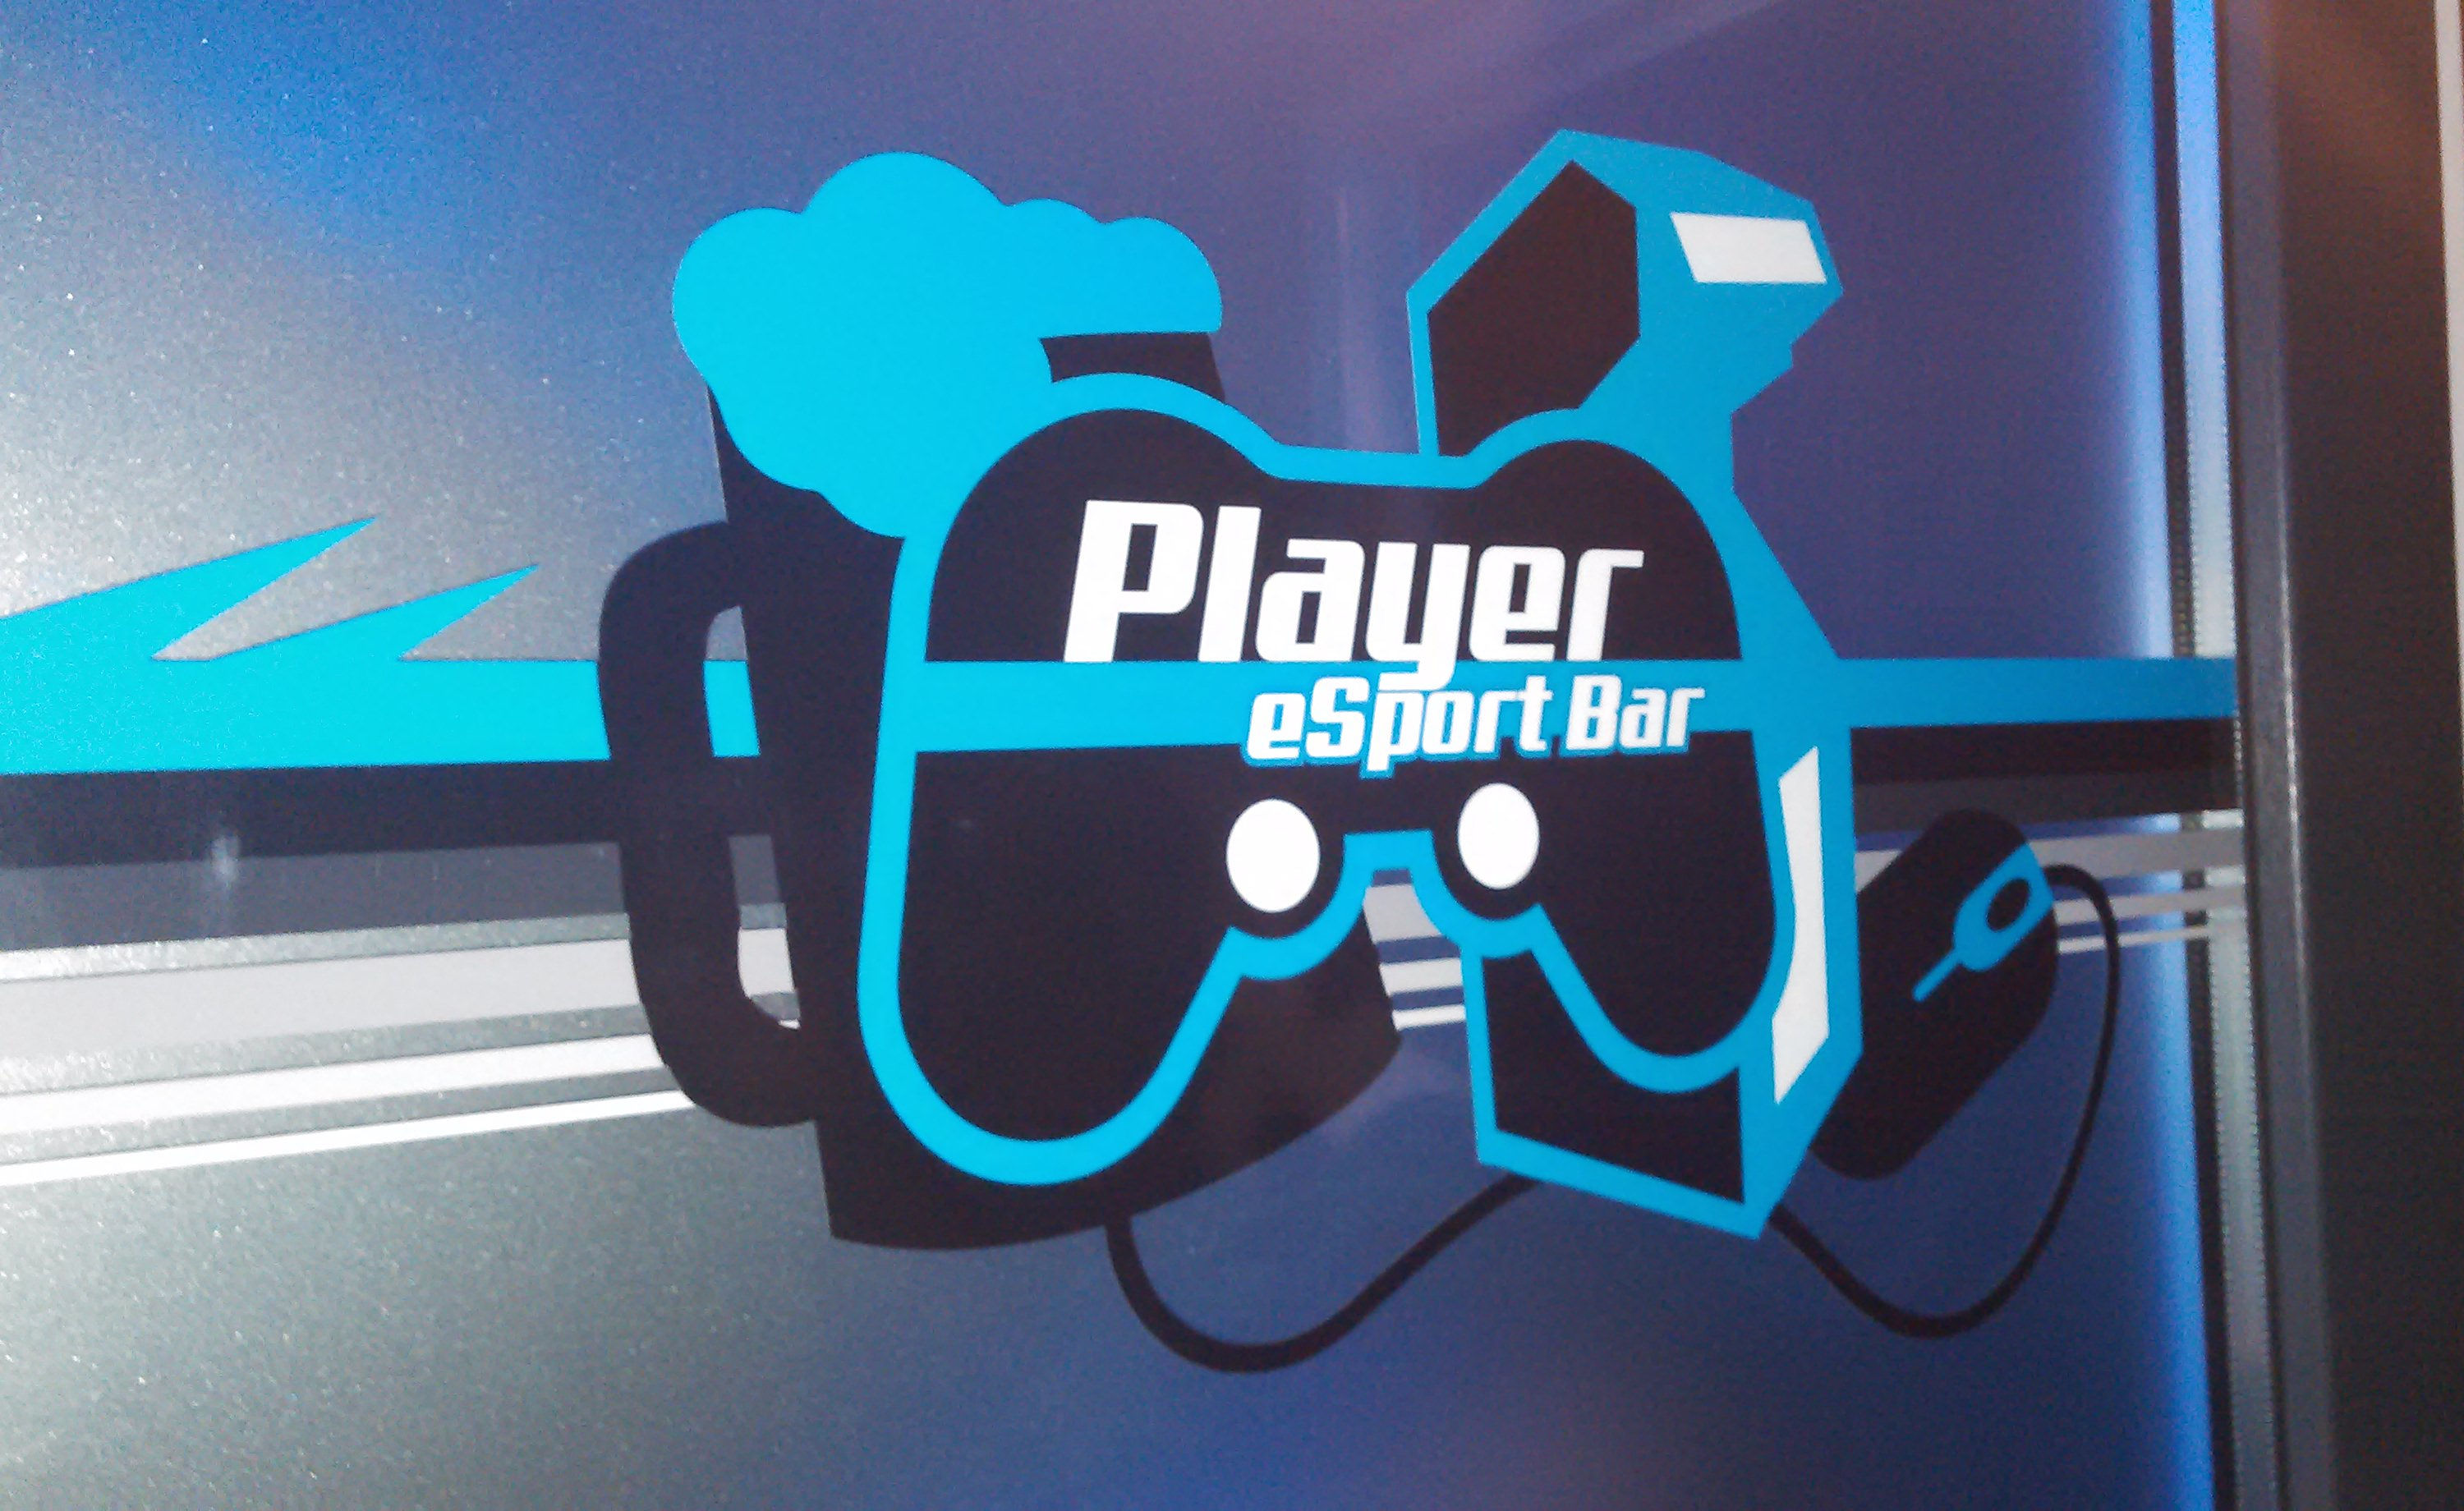 Player eSports Bar door logo